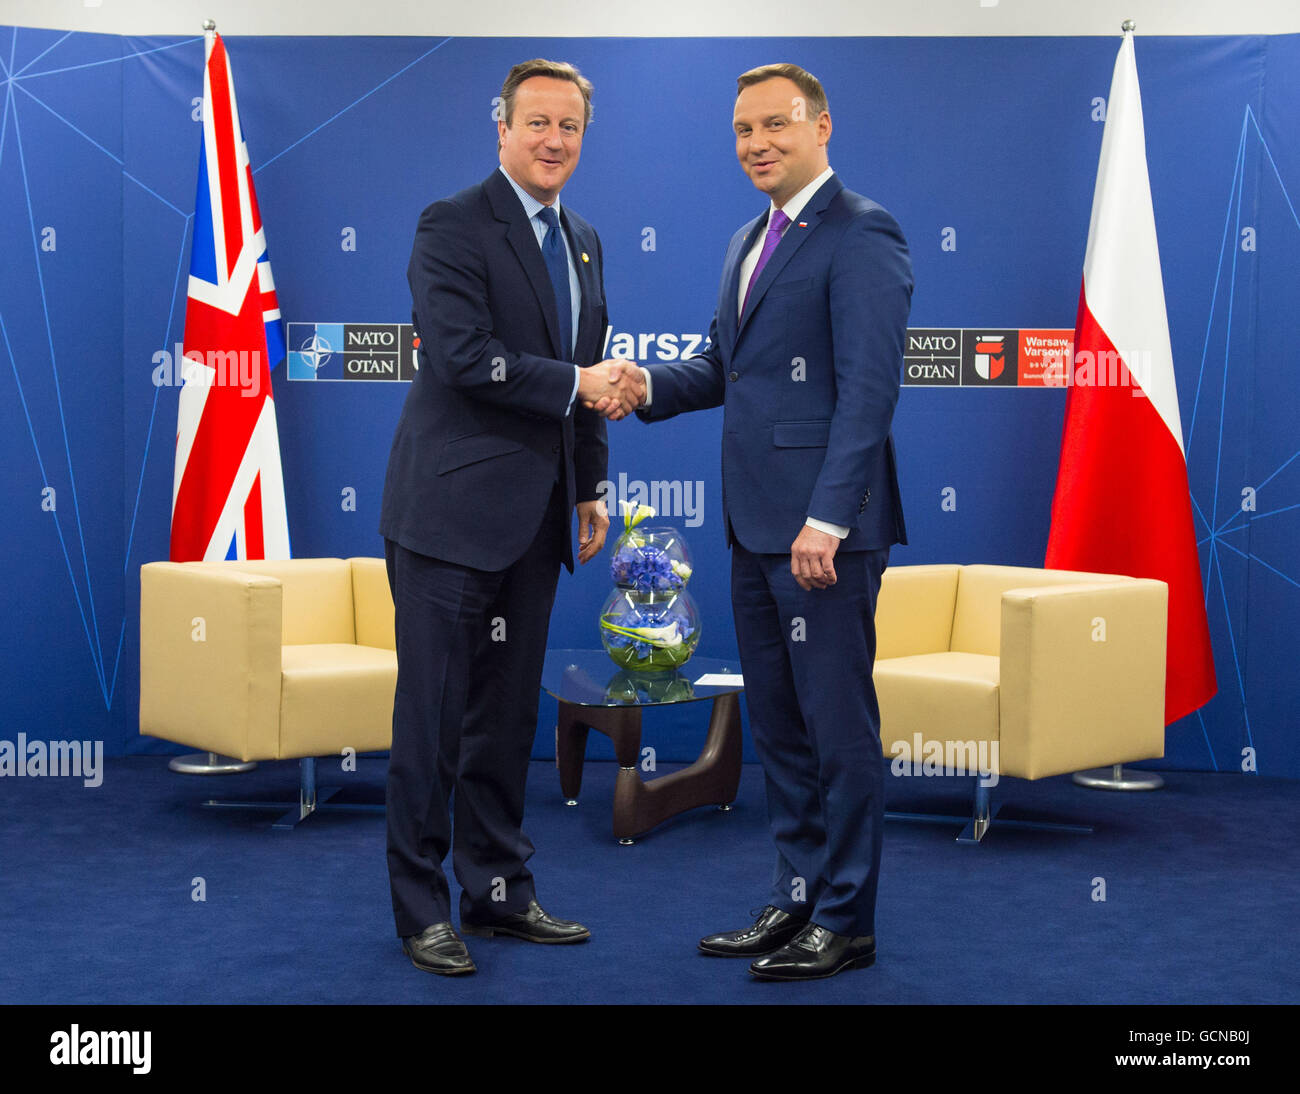 Le premier ministre David Cameron (à gauche) rencontre le président de Pologne Andrzej Duda dans une réunion bilatérale sur la deuxième journée du sommet de l'Otan au Stade National, à Varsovie, Pologne. Banque D'Images